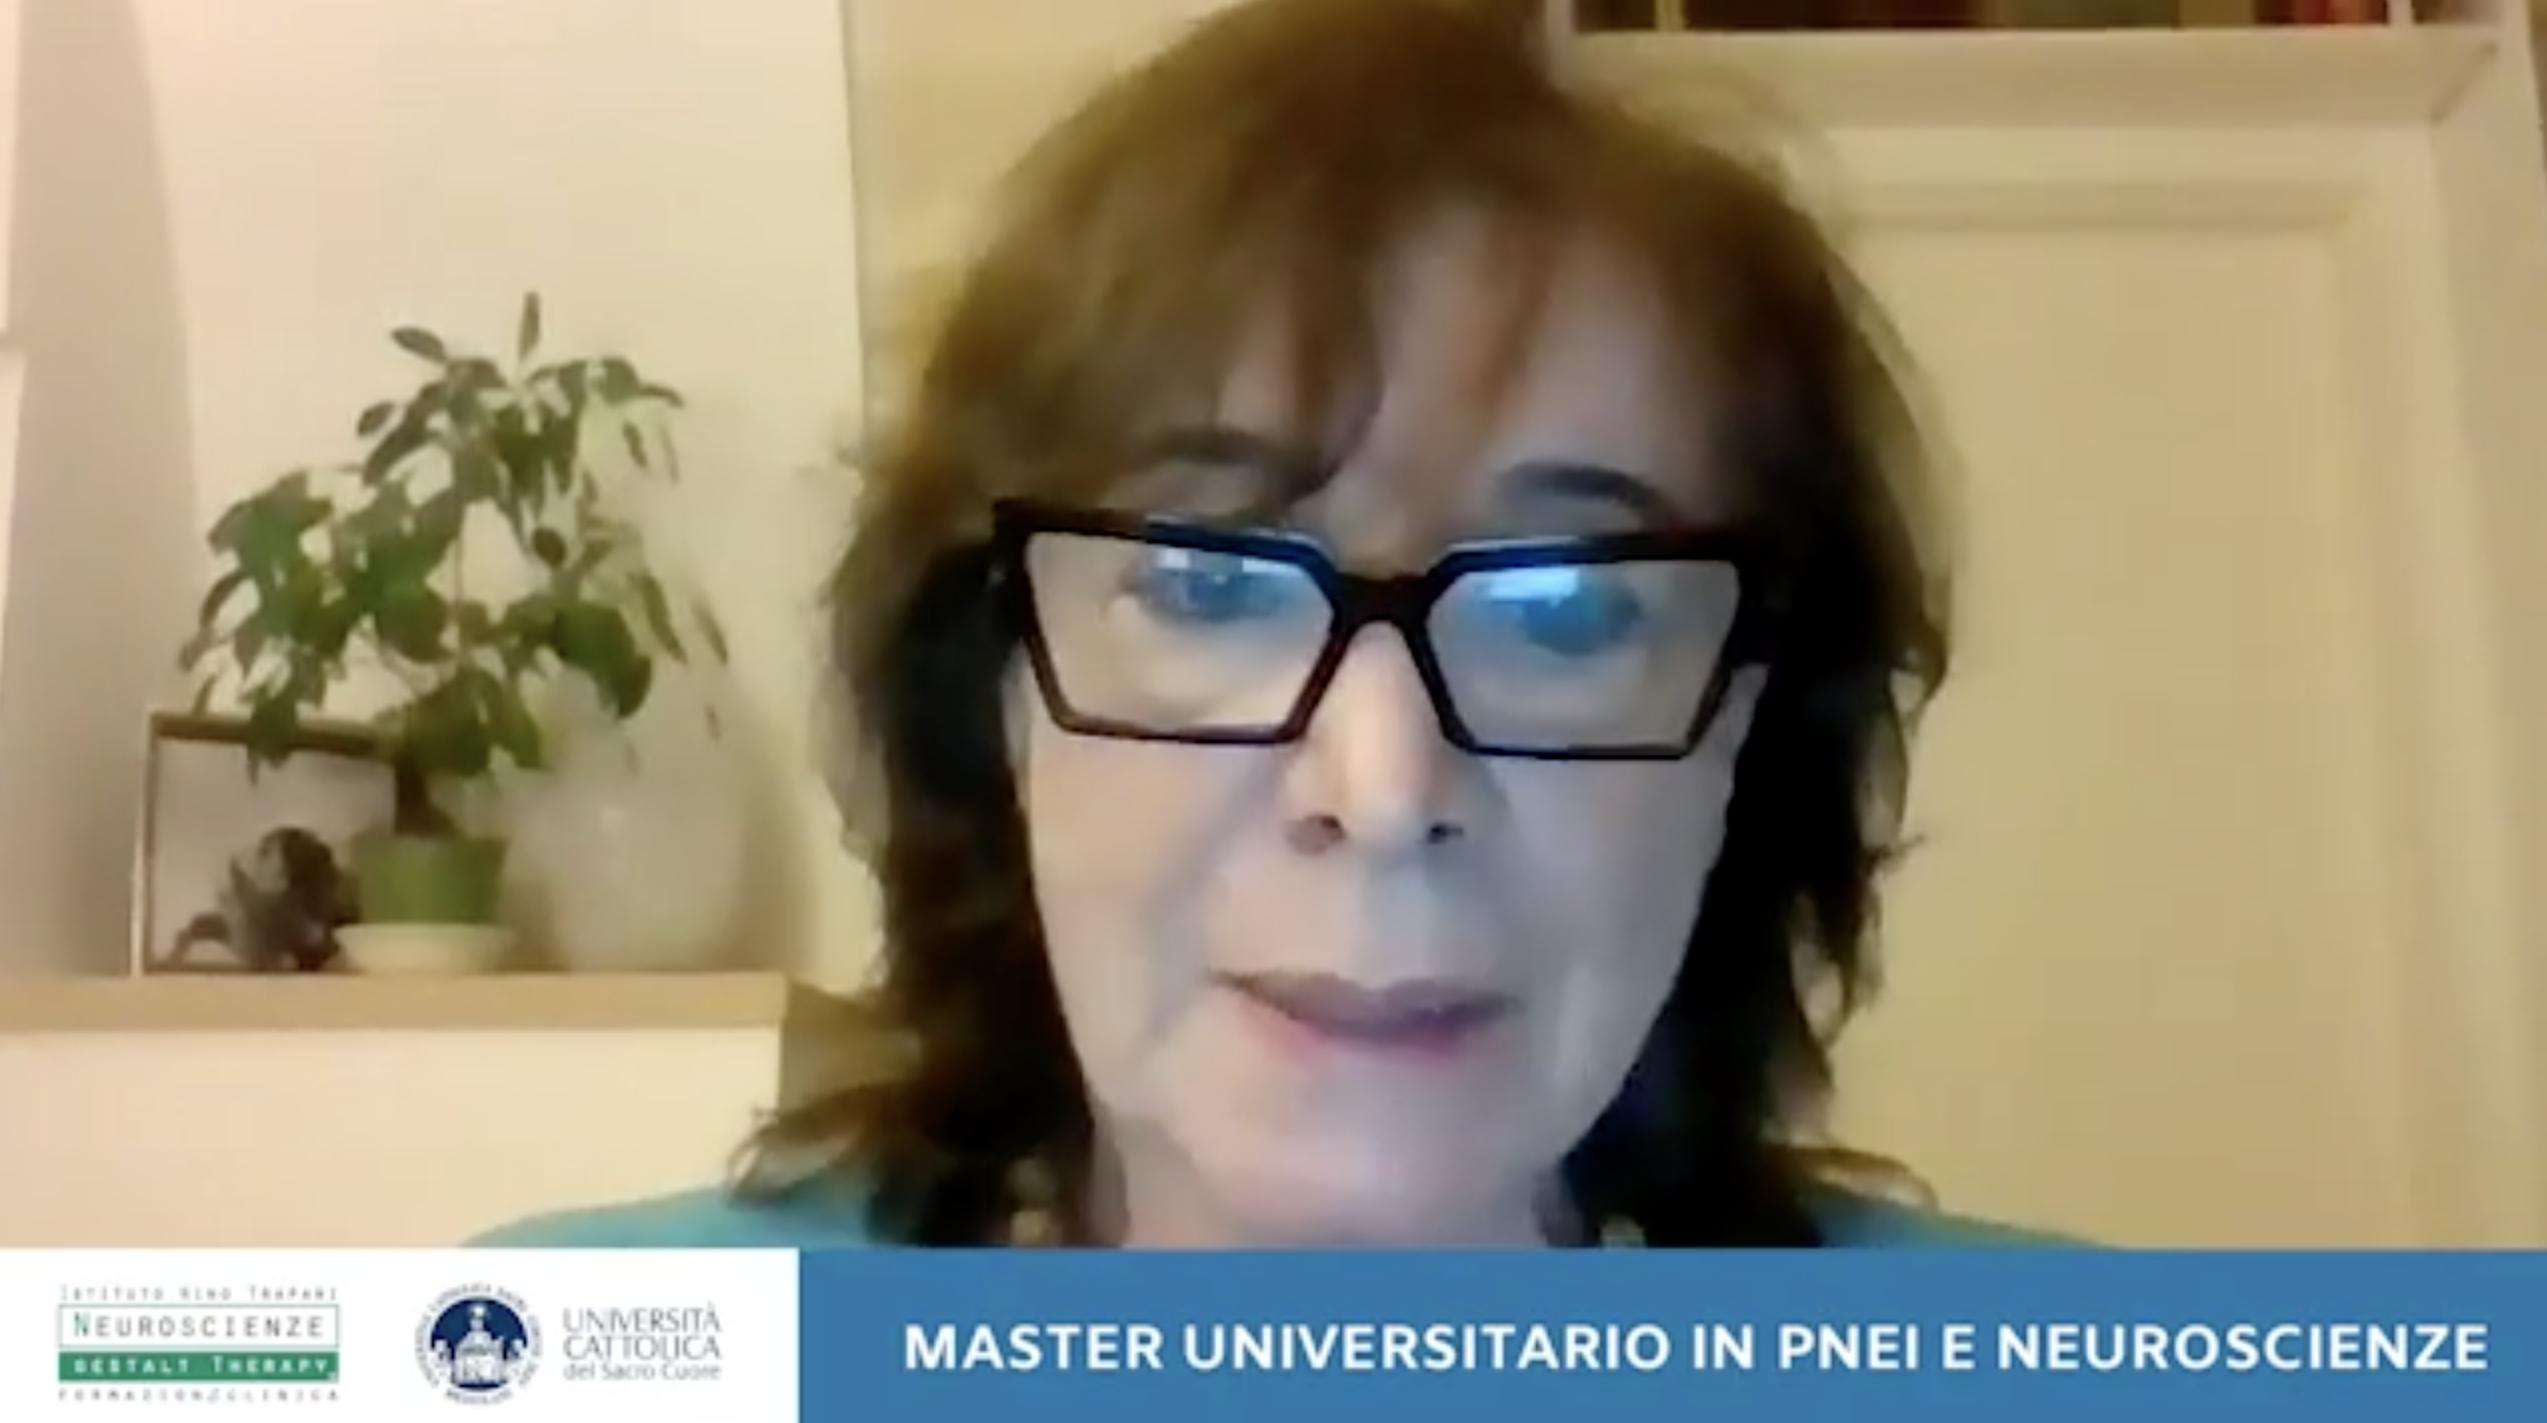 VIDEO. Master in Pnei e Neuroscienze, intervista alla prof.ssa Marina Risi